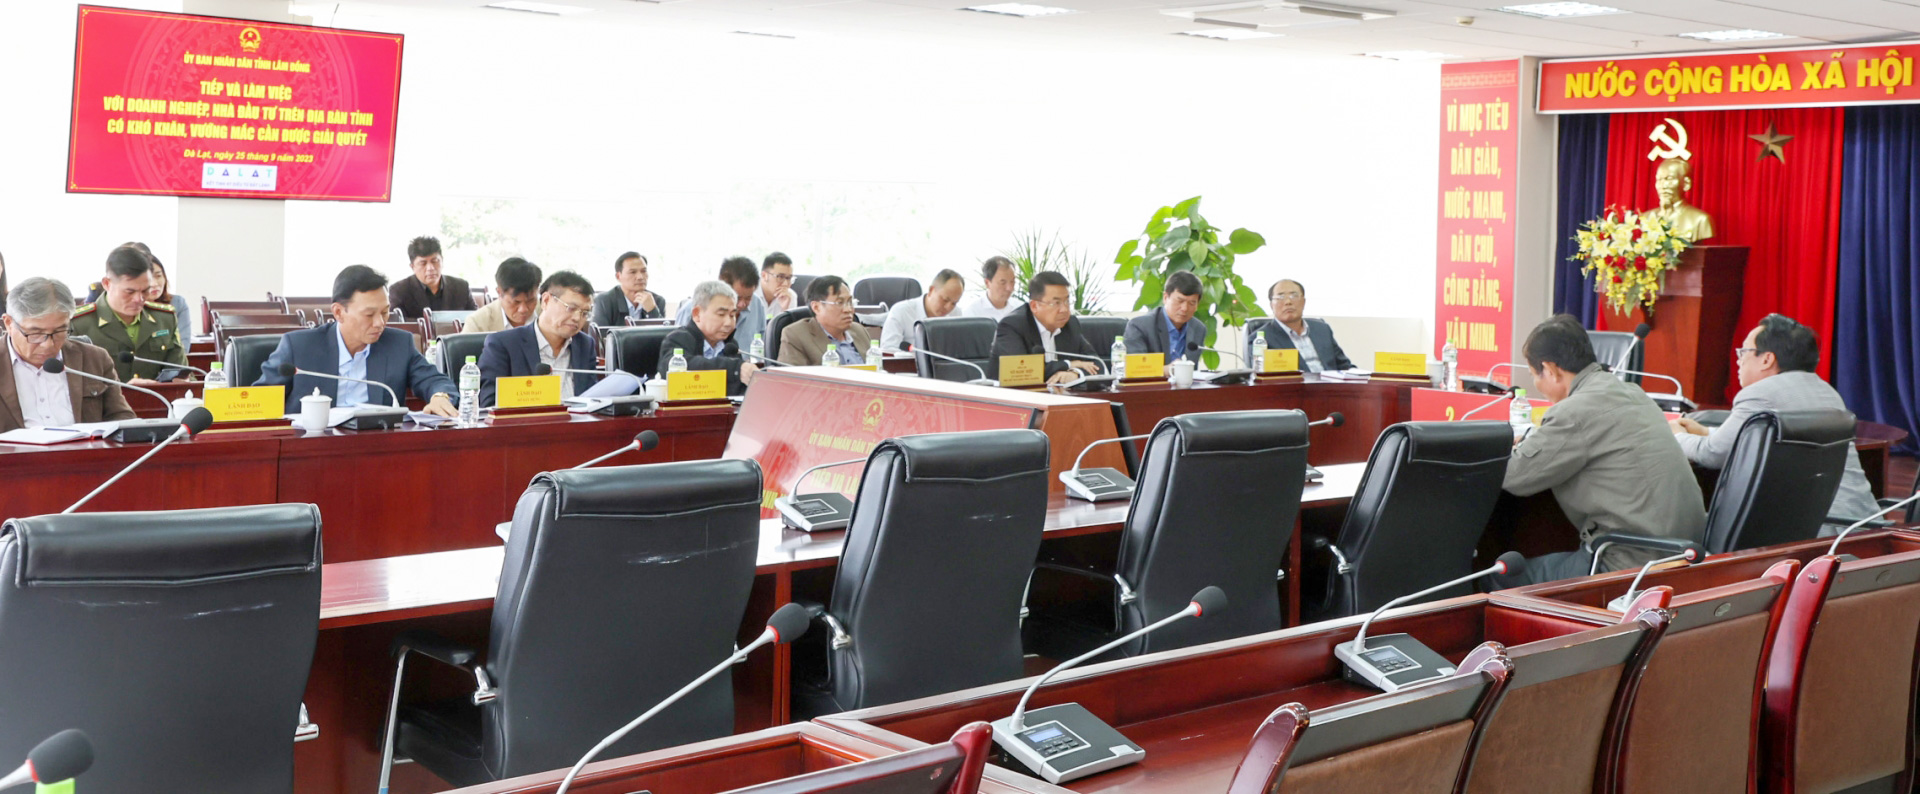 Lãnh đạo các sở, ngành tham dự buổi làm việc với doanh nghiệp cùng Phó Chủ tịch UBND tỉnh Lâm Đồng Võ Ngọc Hiệp